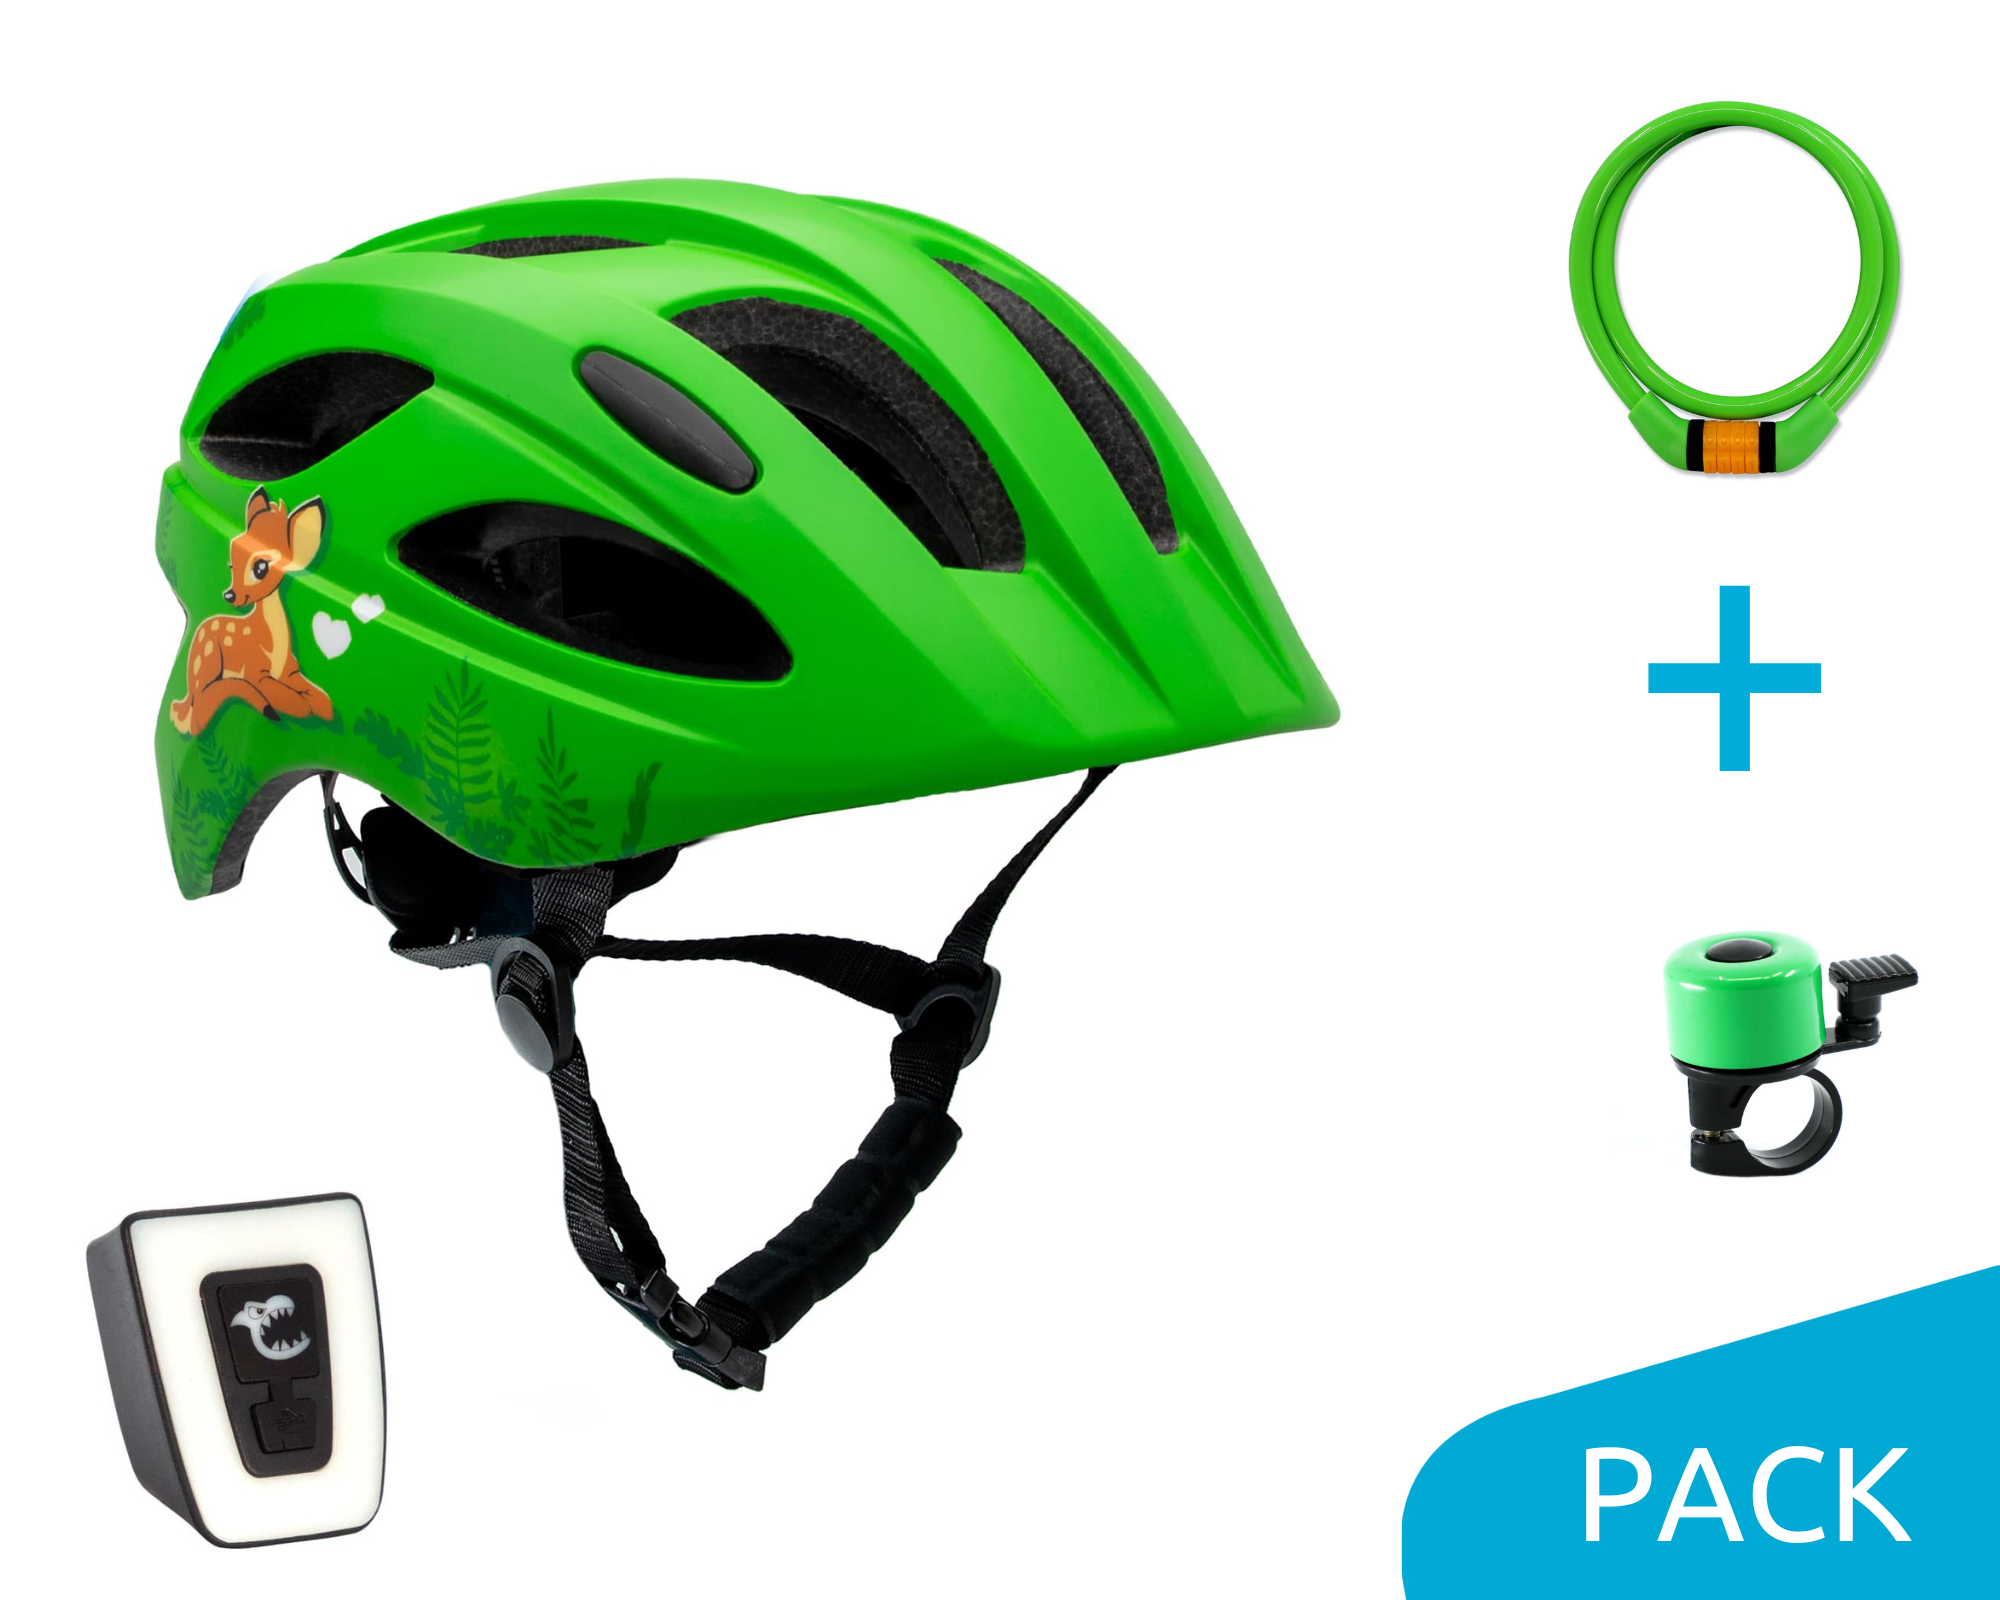 Cute Bicycle Helmet - Green Pack